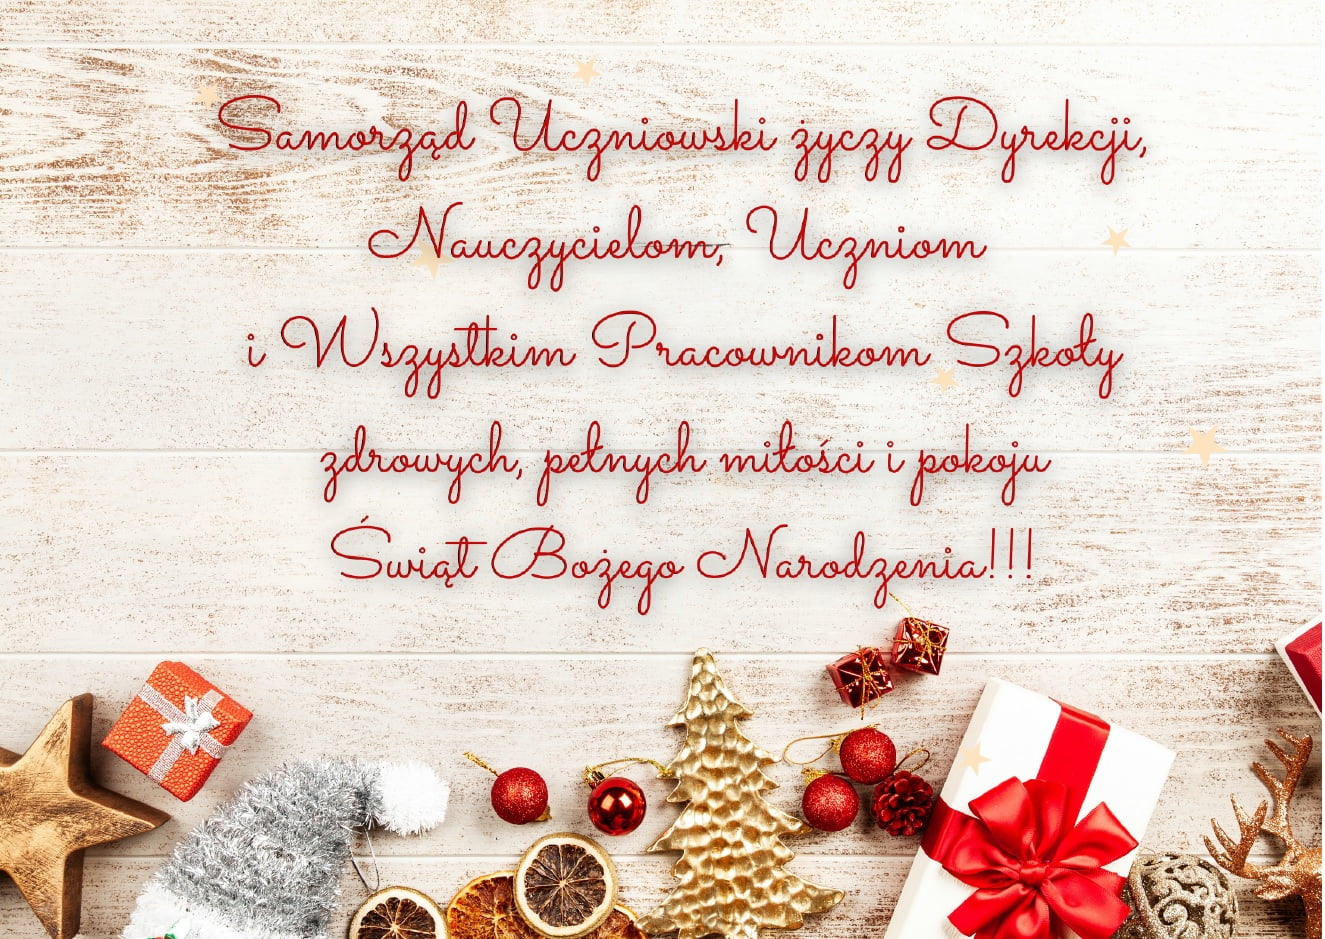 Życzenia Samorządu Uczniowskiego z okazji Świąt Bożego Narodzenia - RCEZ  Lubartów